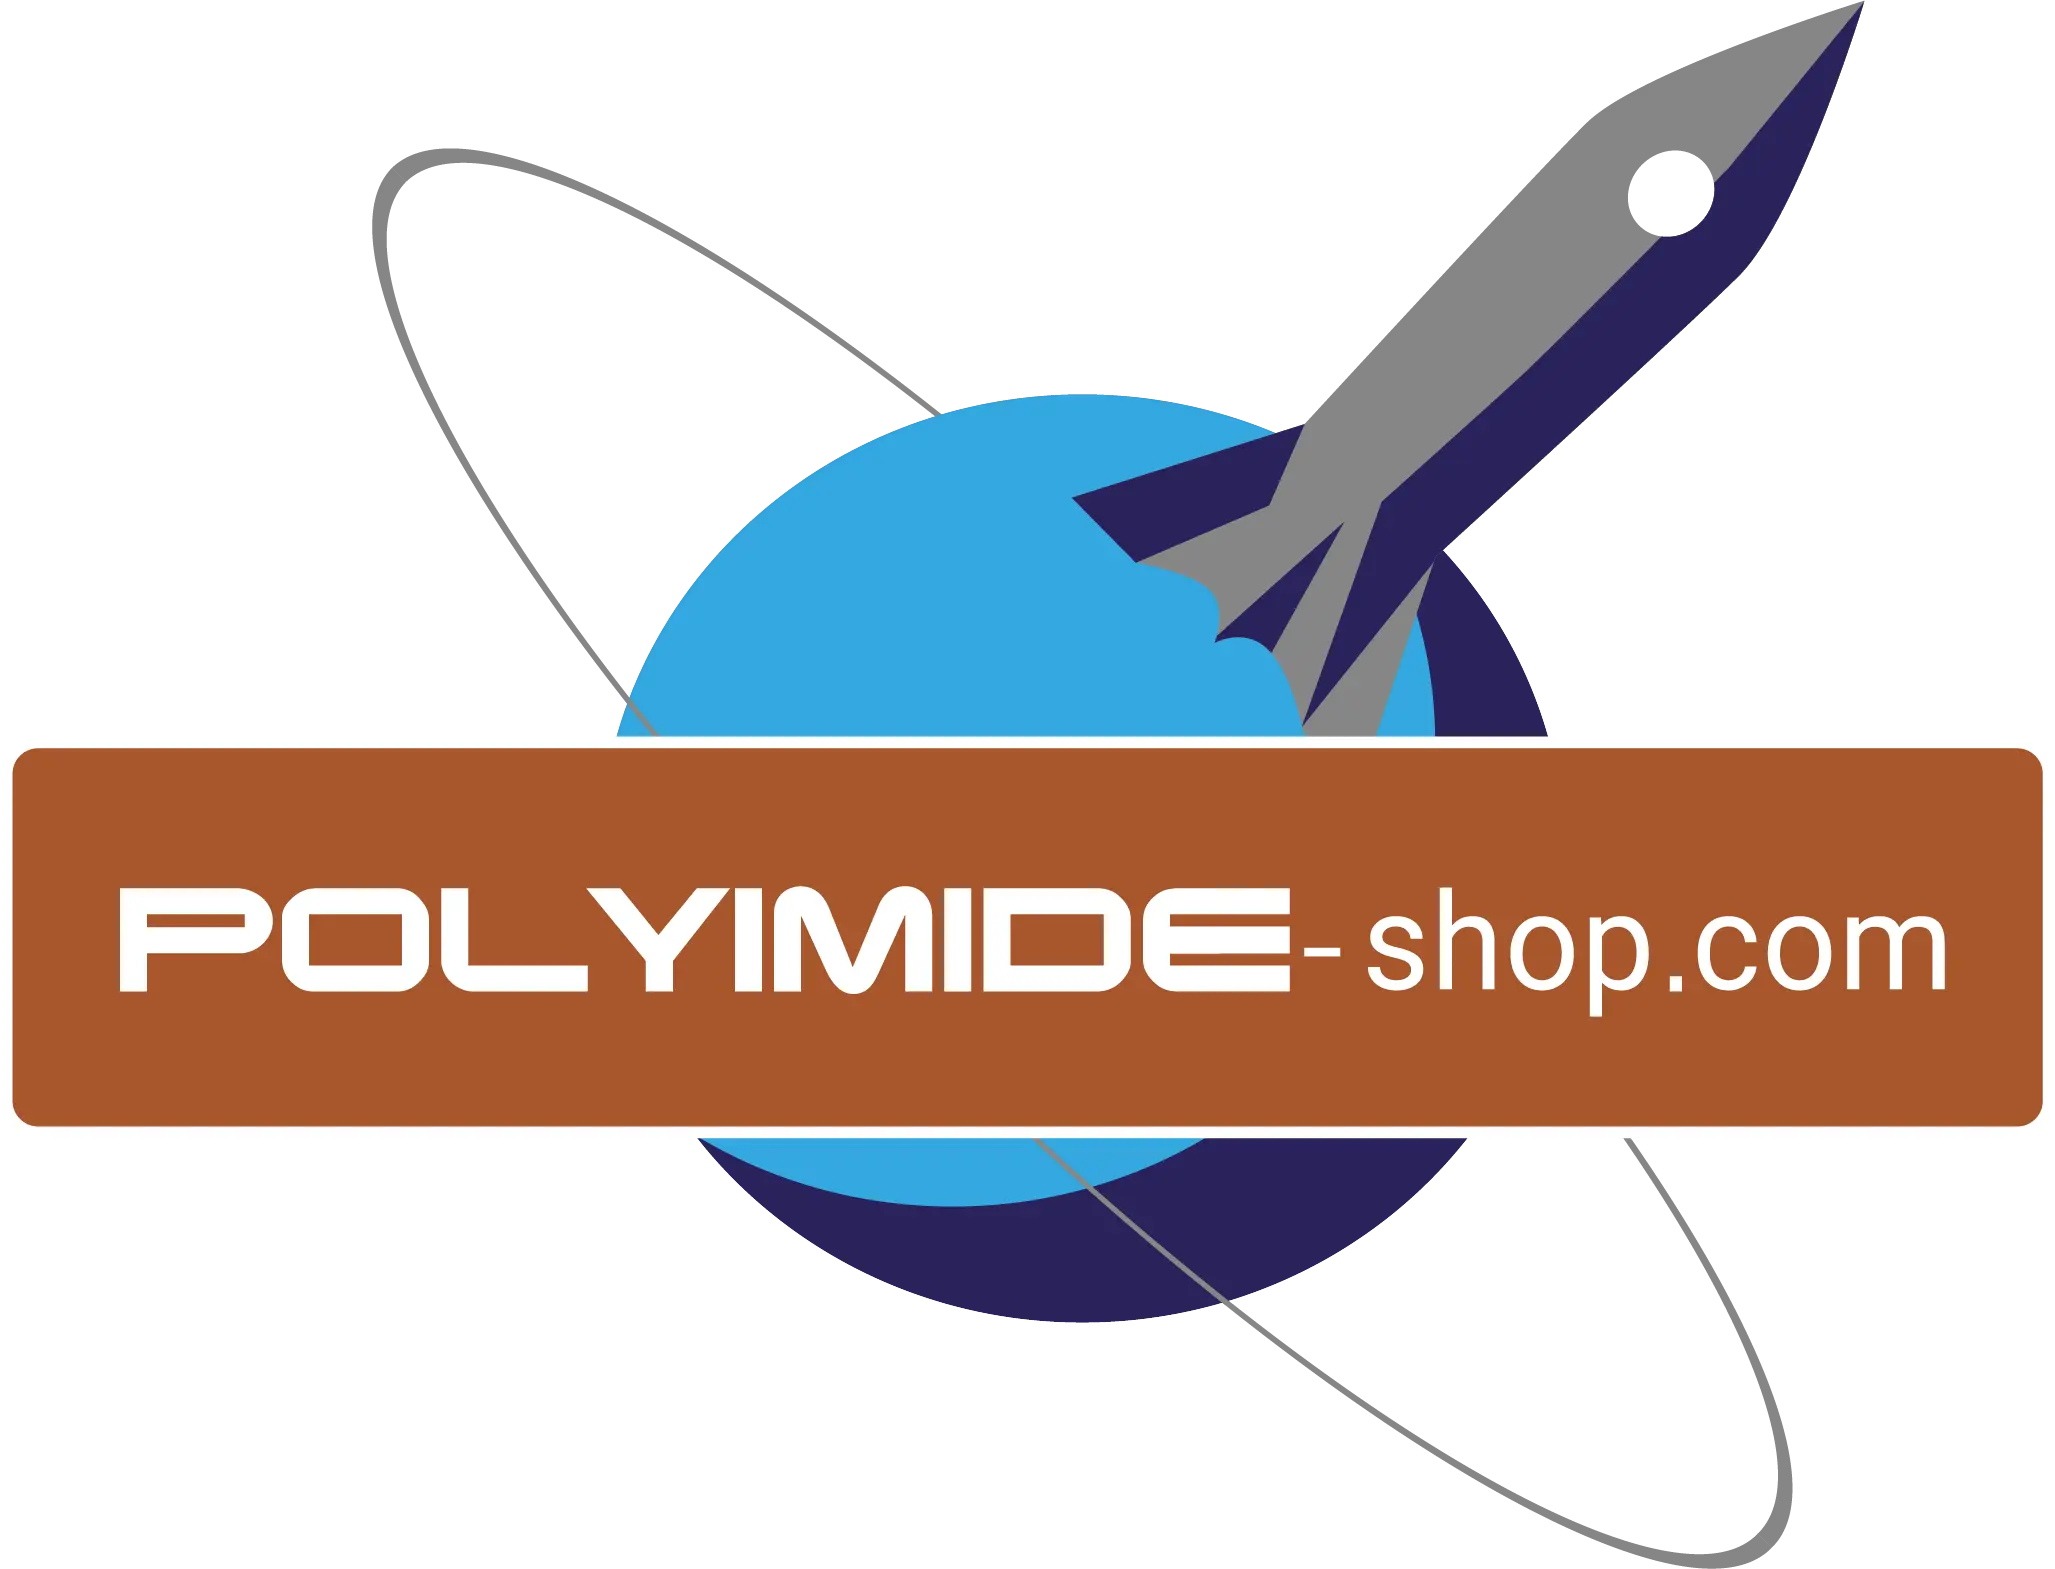 Polyimide shop aurum space project